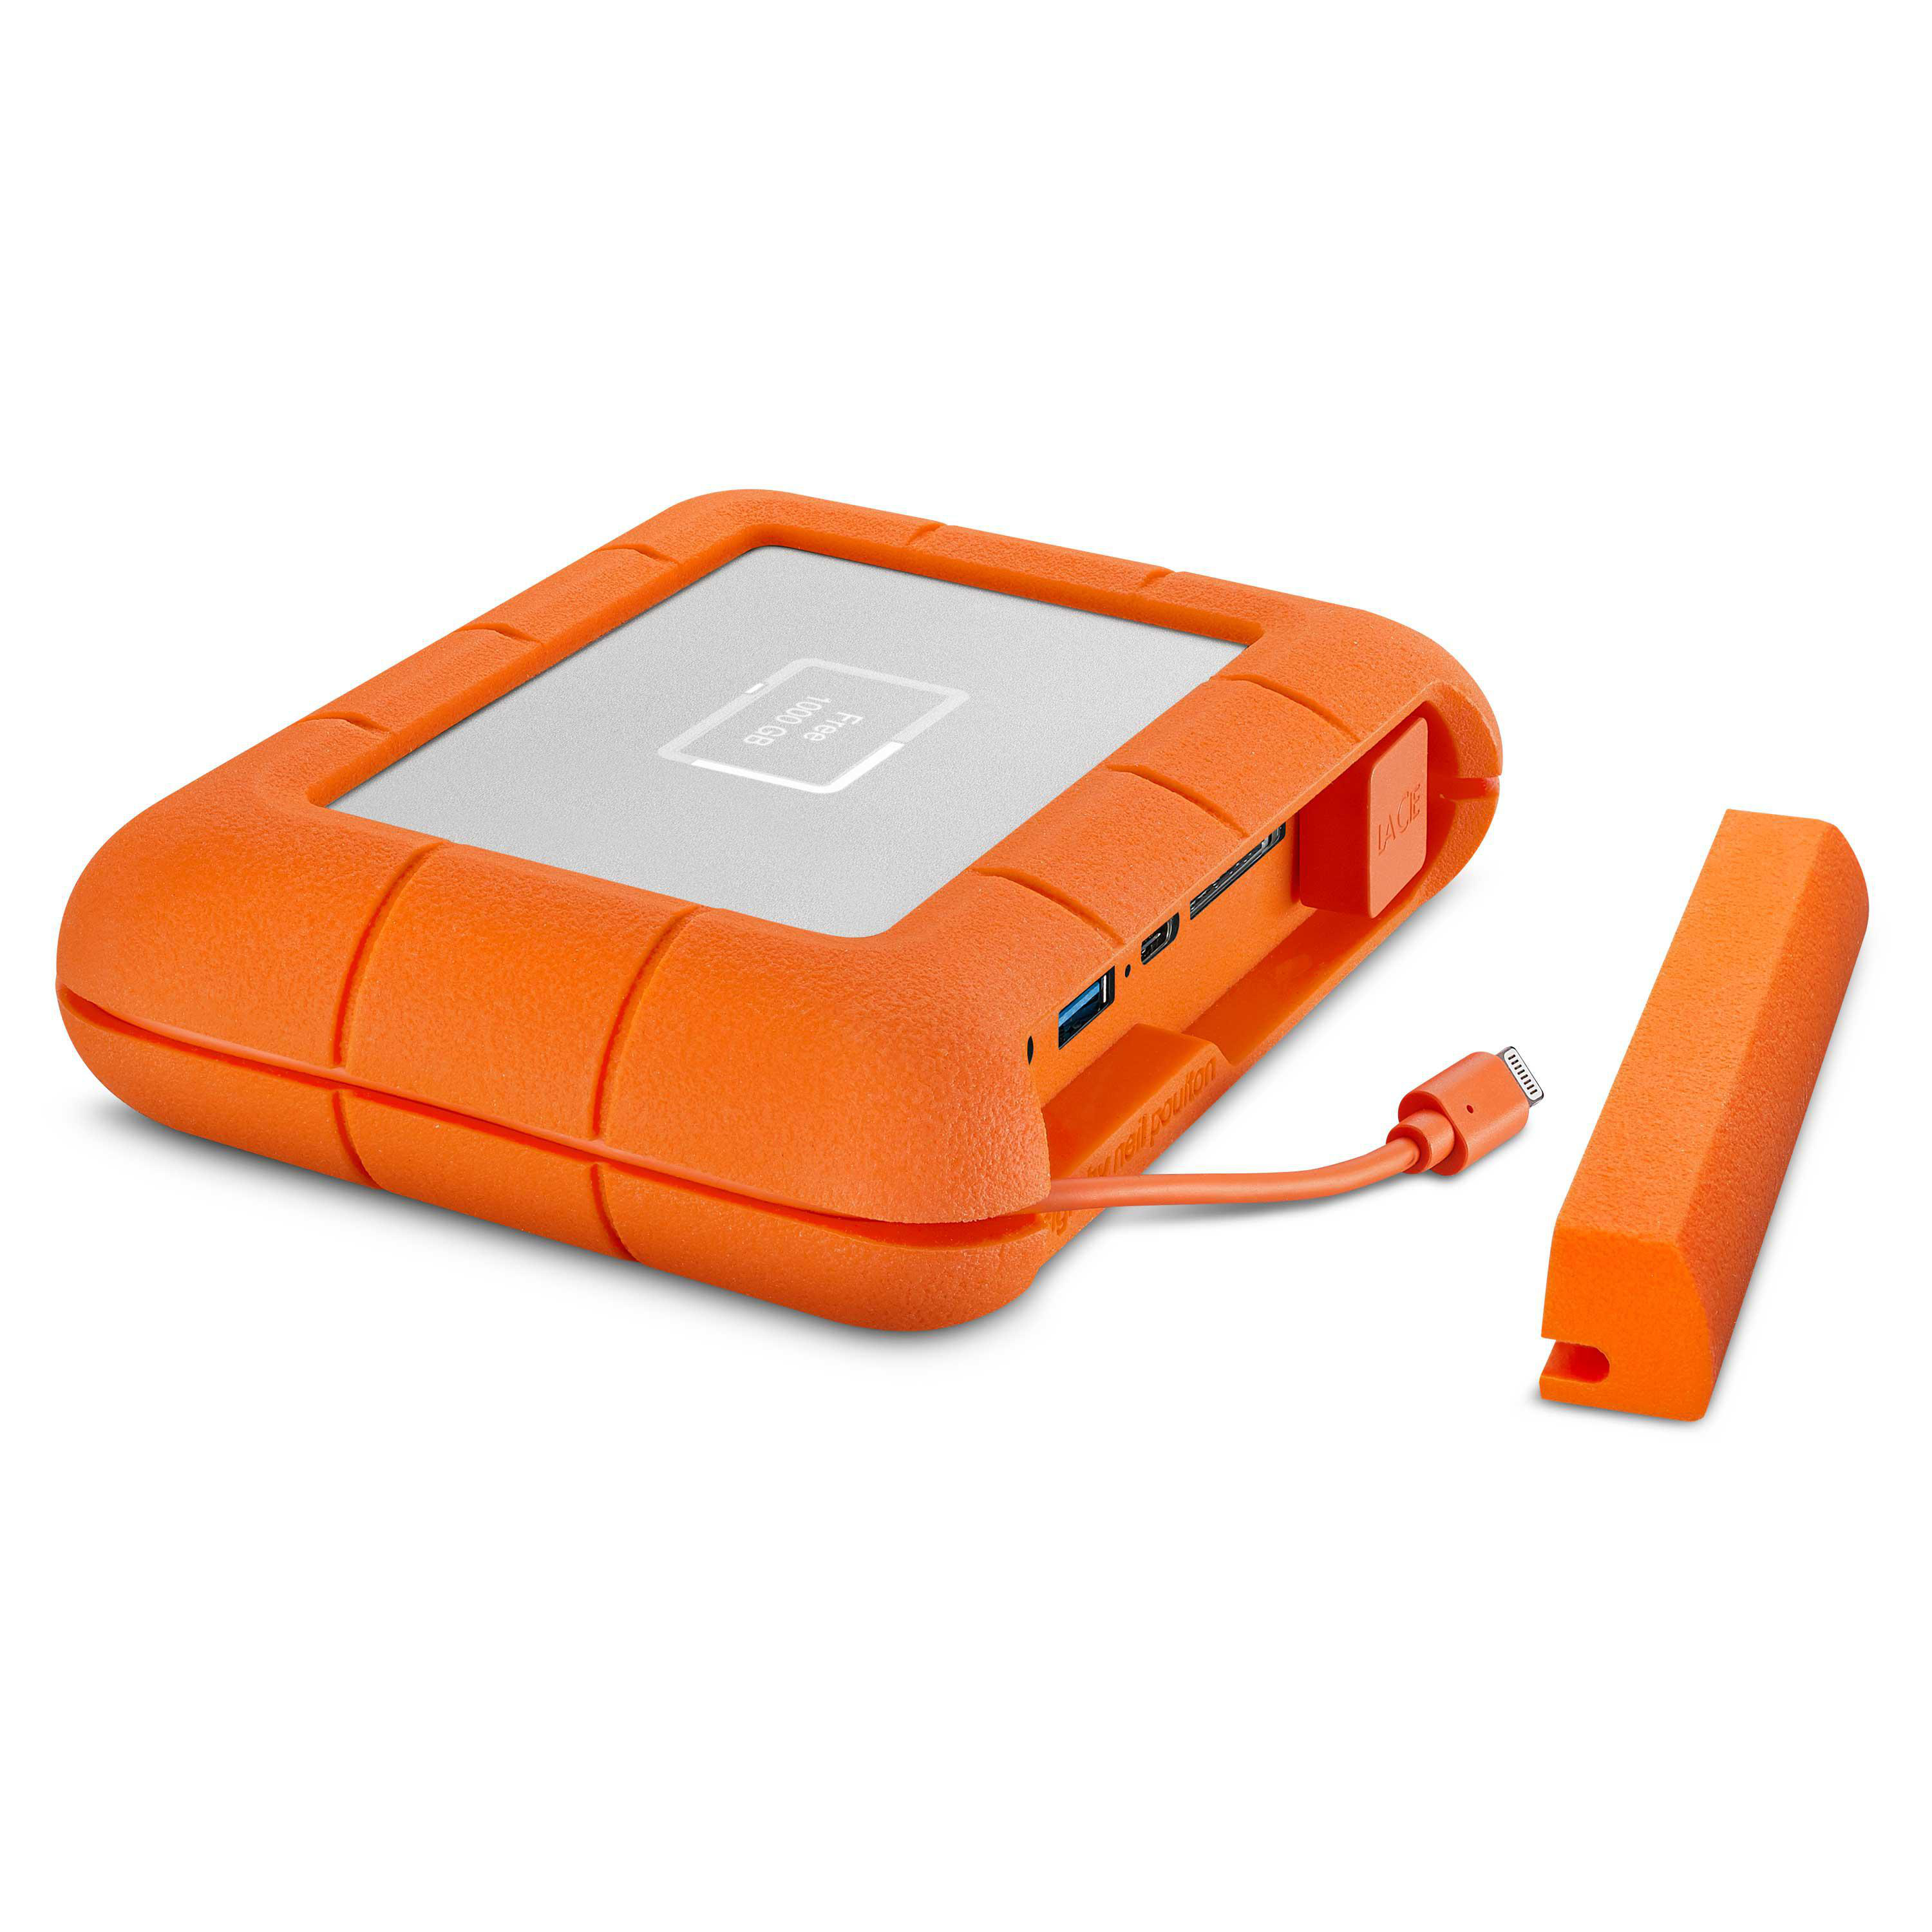 LACIE Rugged BOSS SSD Orange/Silver 2,5 extern, 1 TB Festplatte, SSD, Zoll